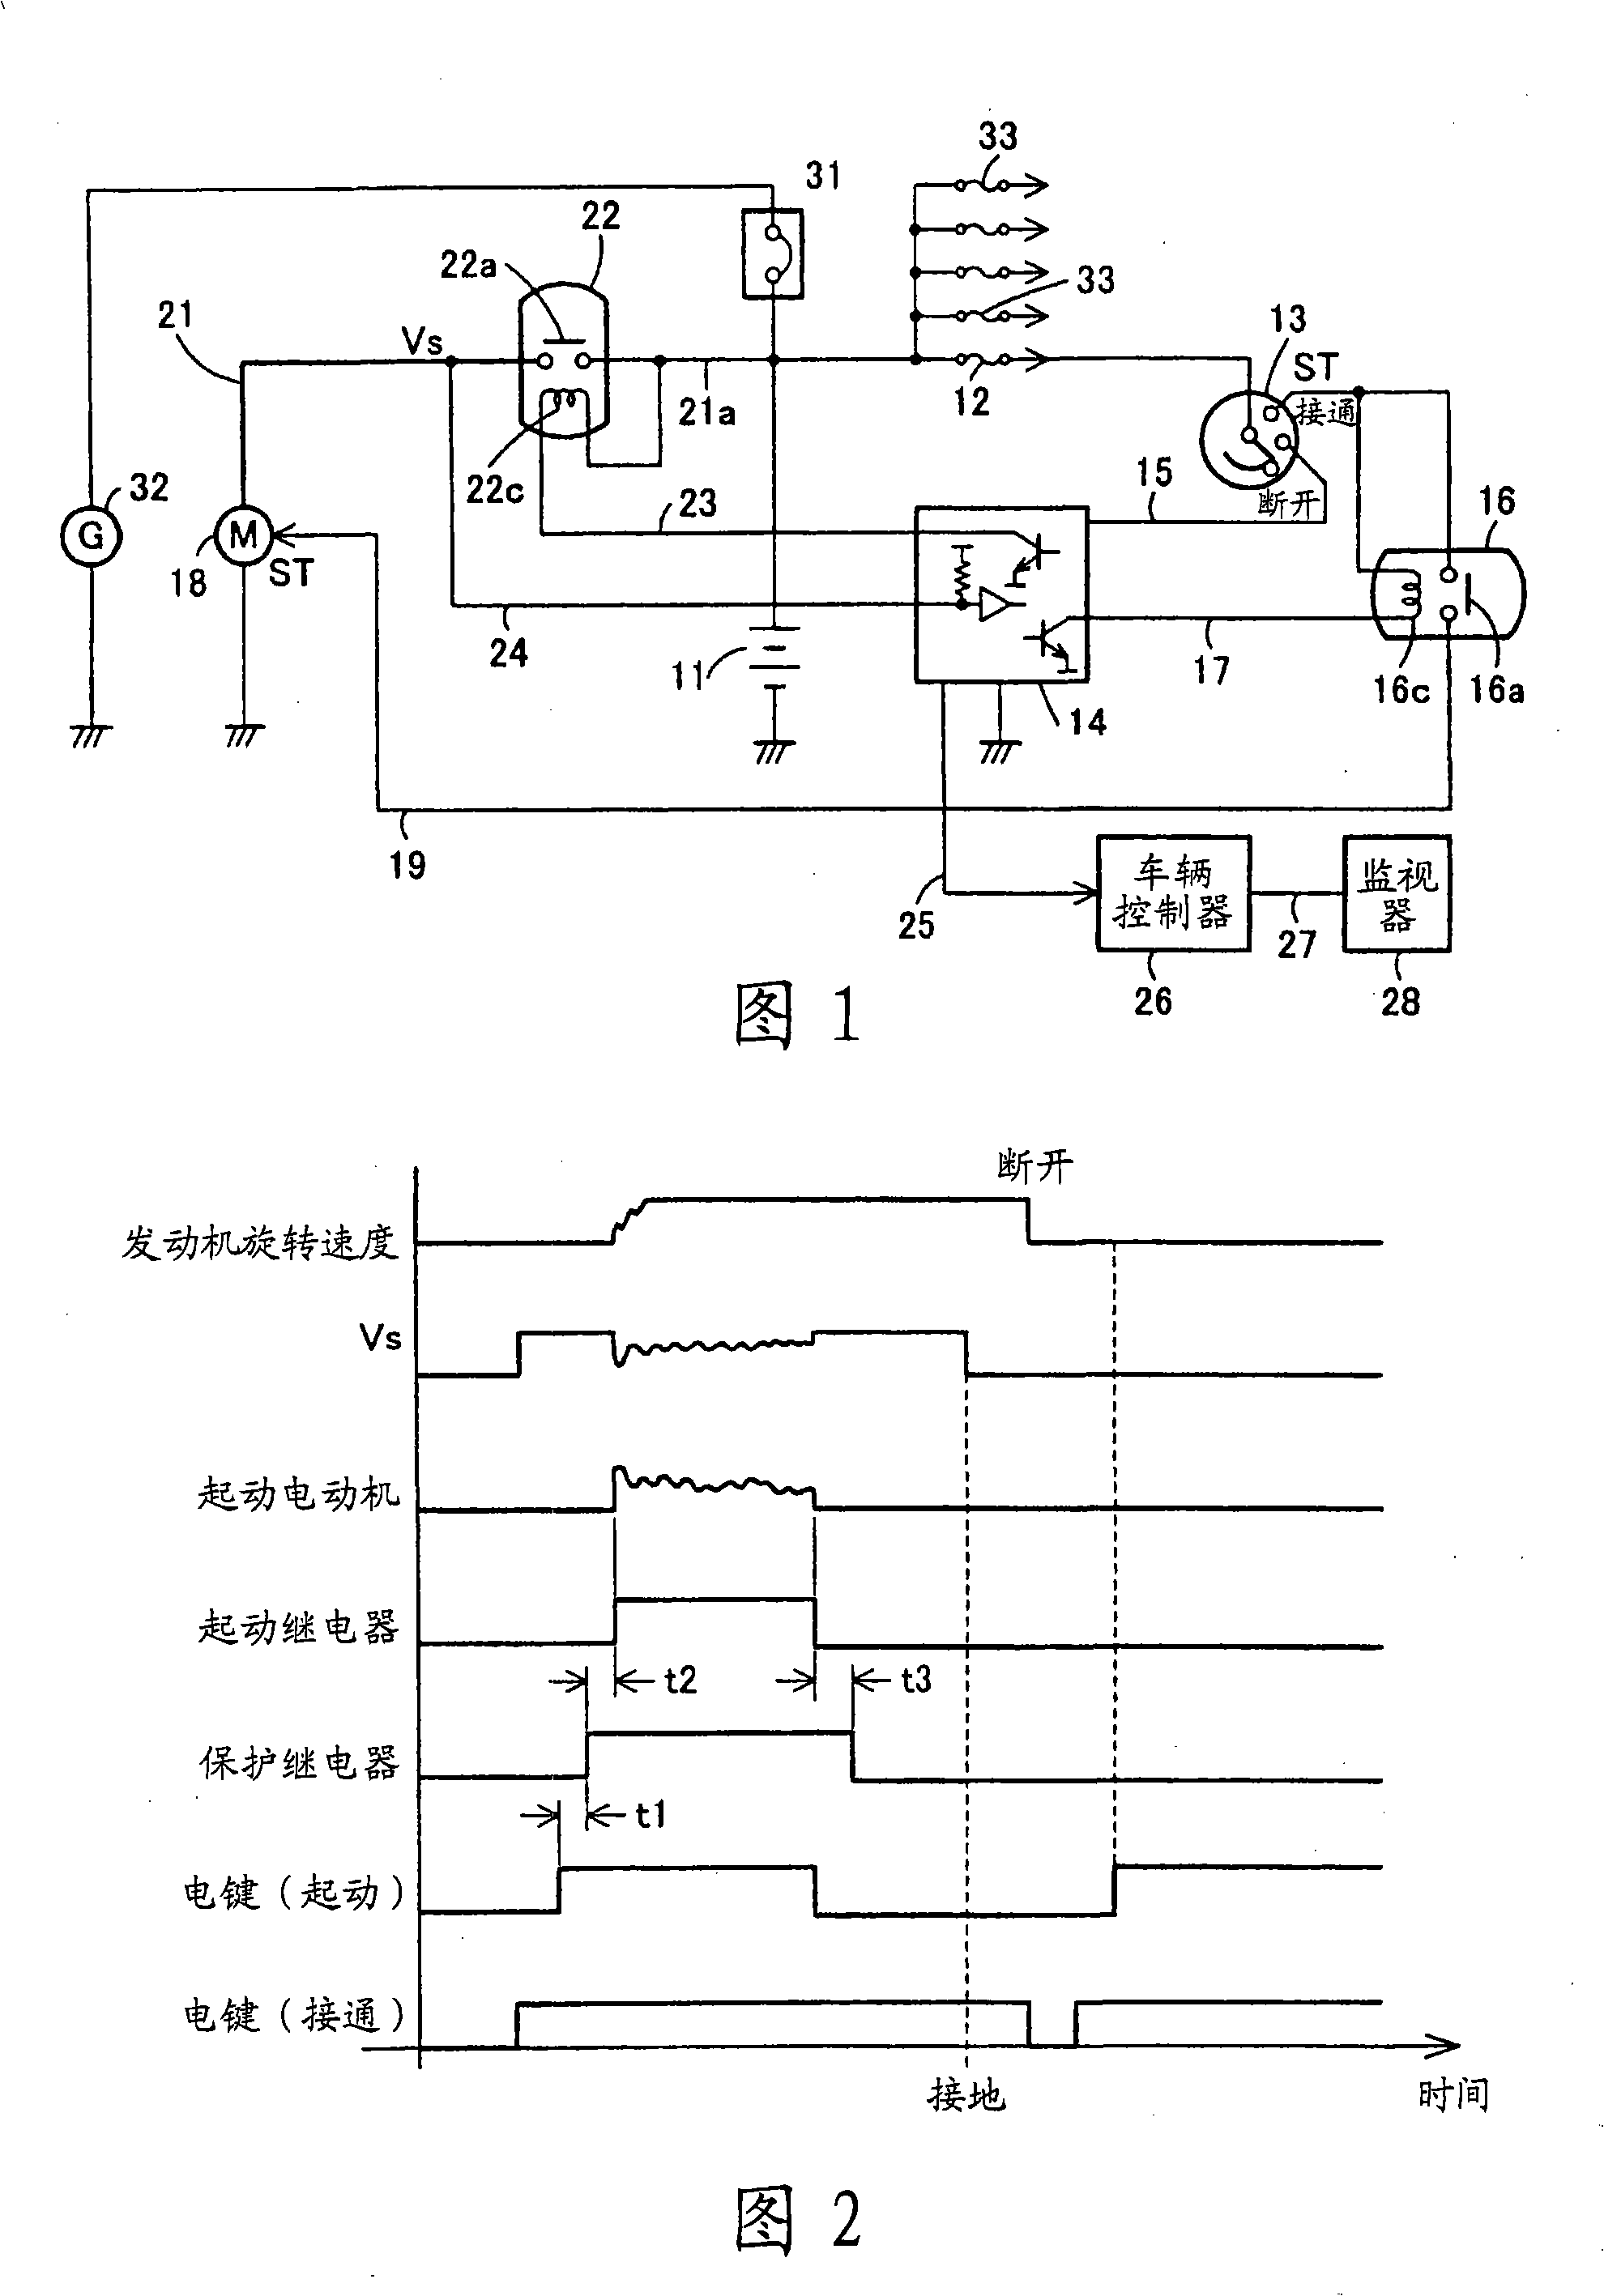 Starter motor control circuit